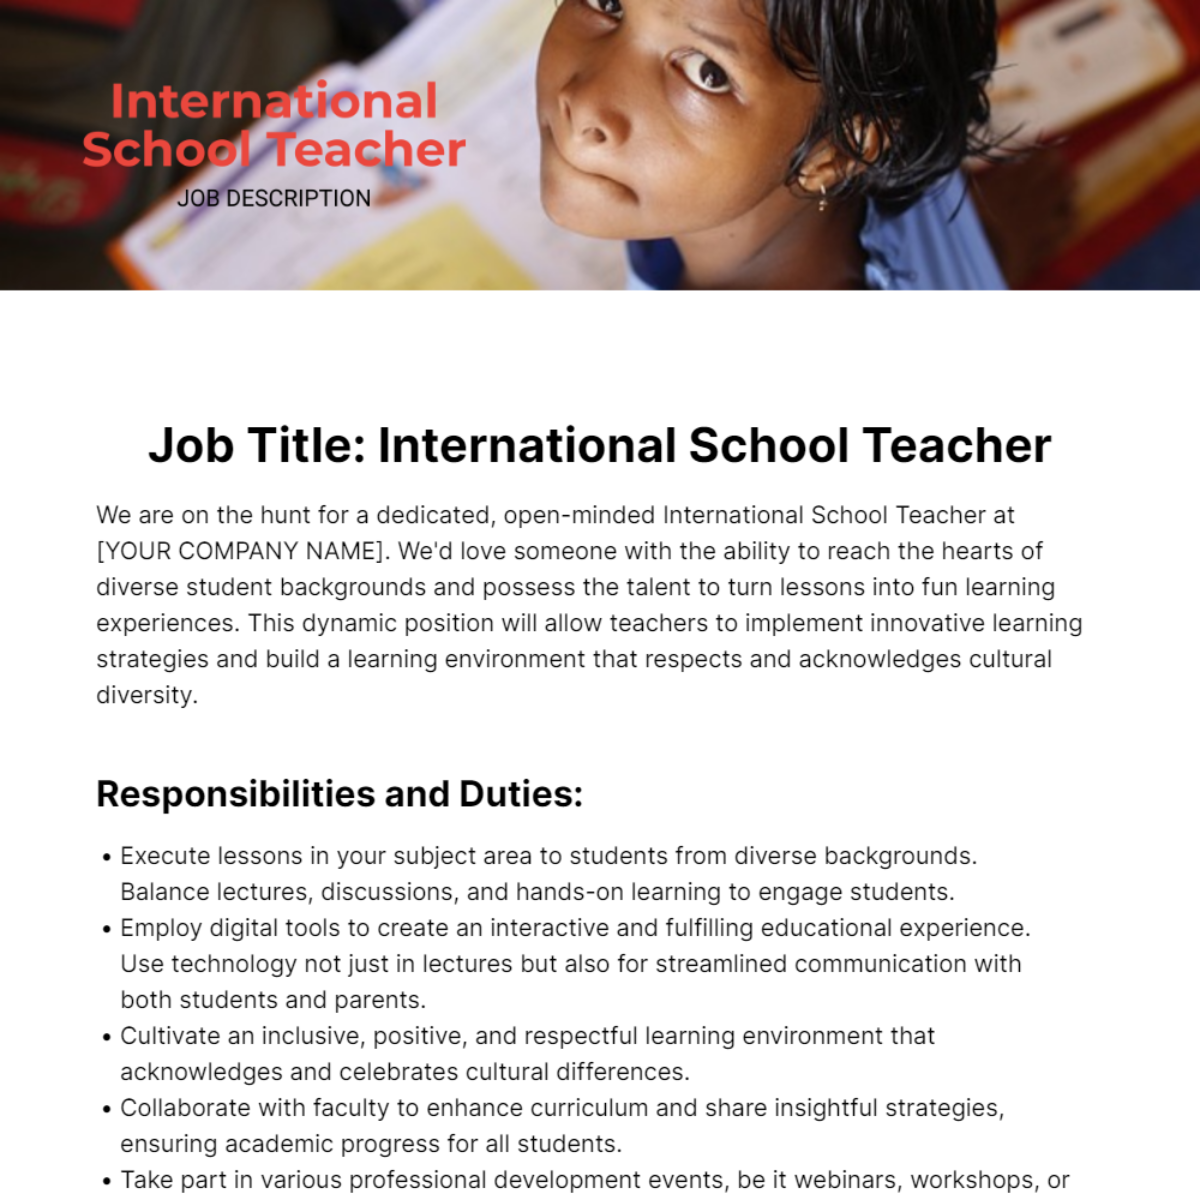 Free International School Teacher Job Description Template